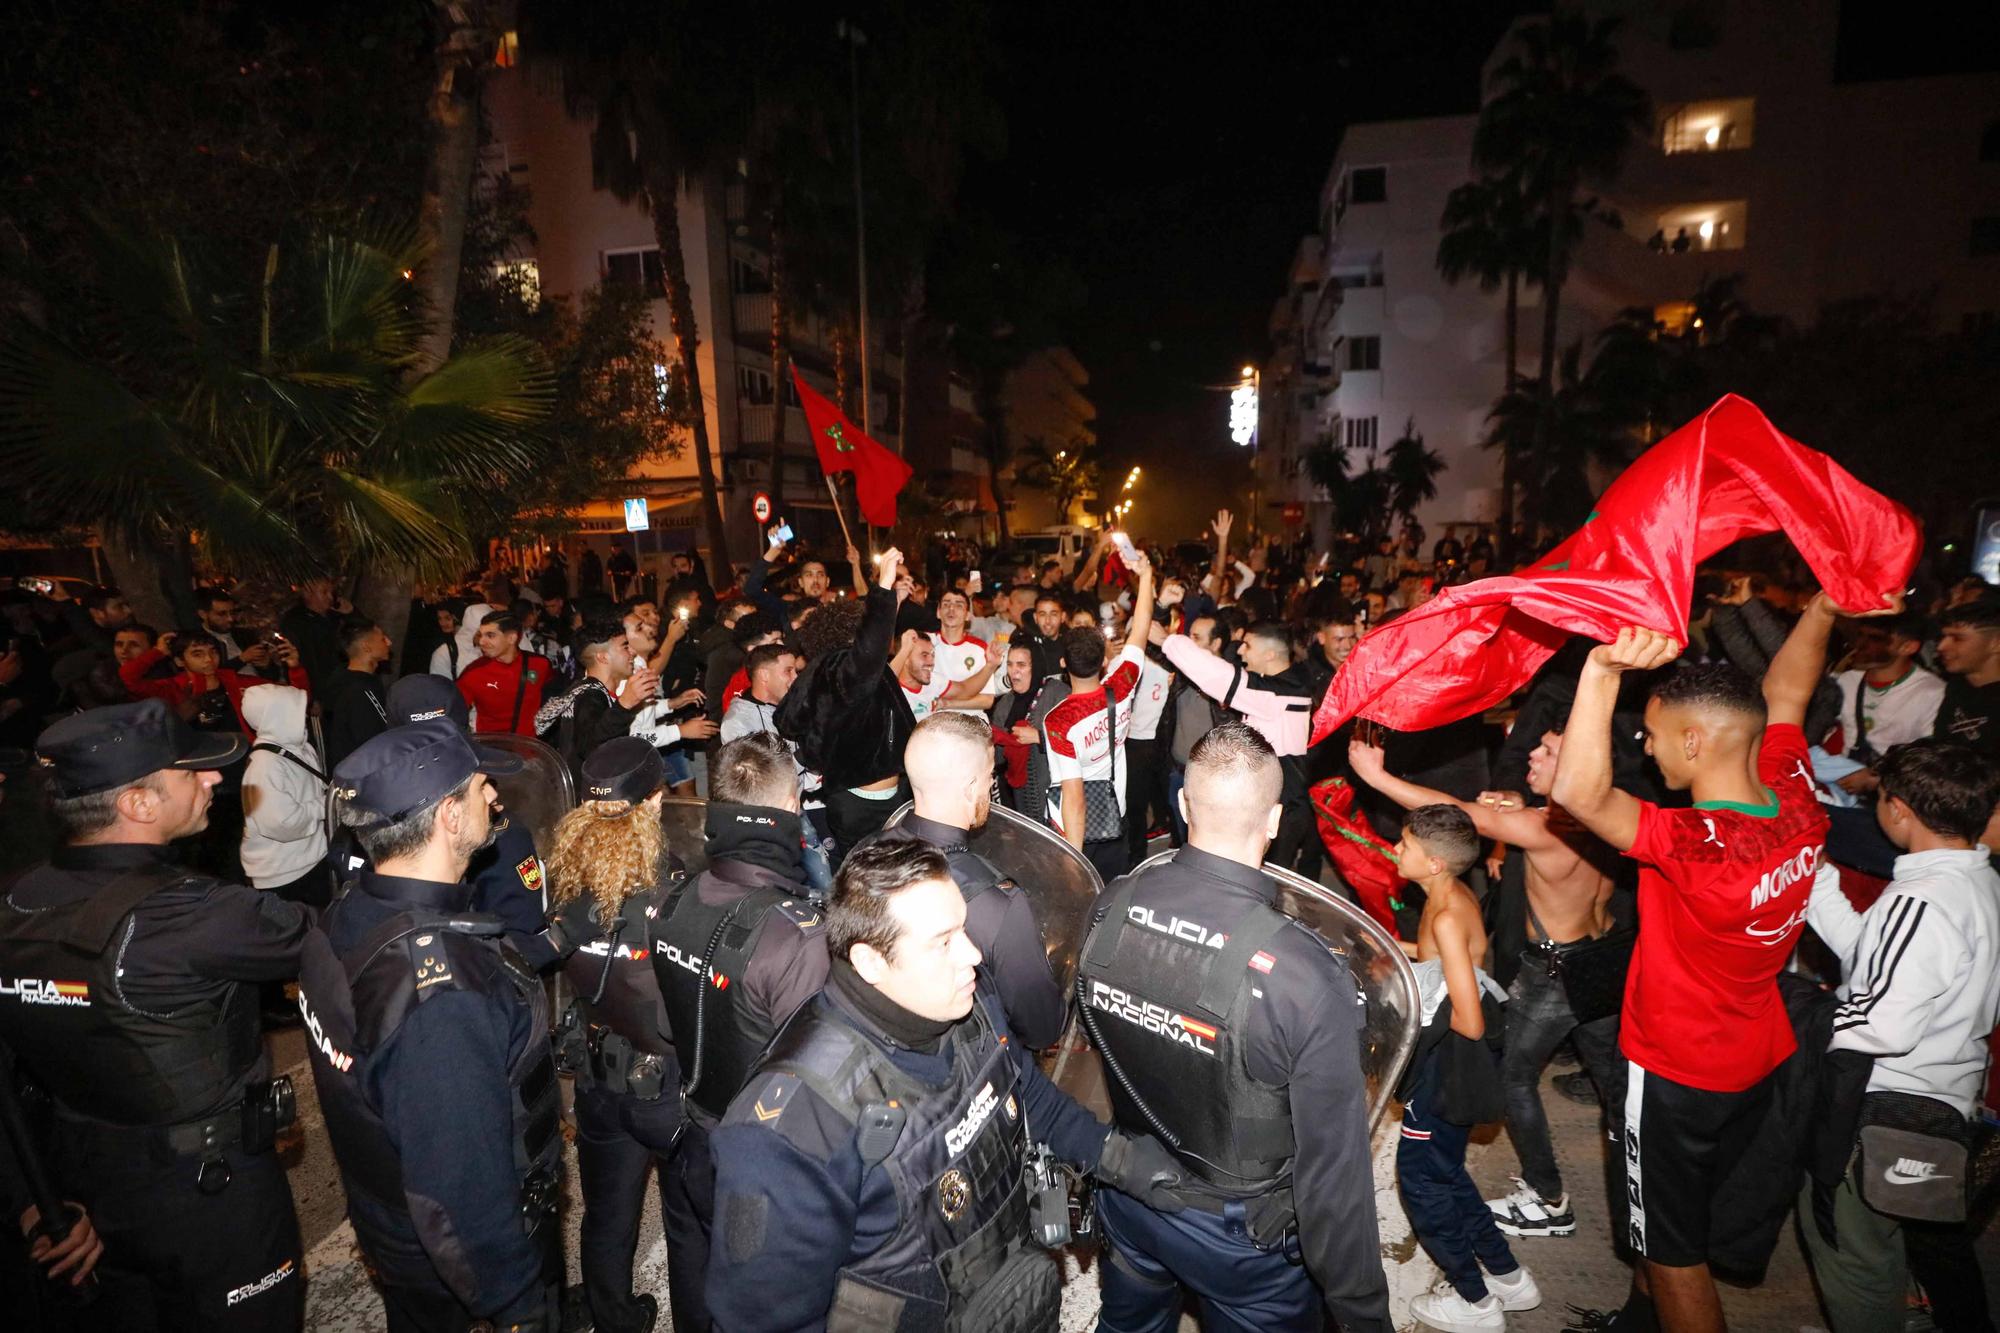 La clasificación de Marruecos para cuartos convierte las calles de Ibiza en una gran fiesta